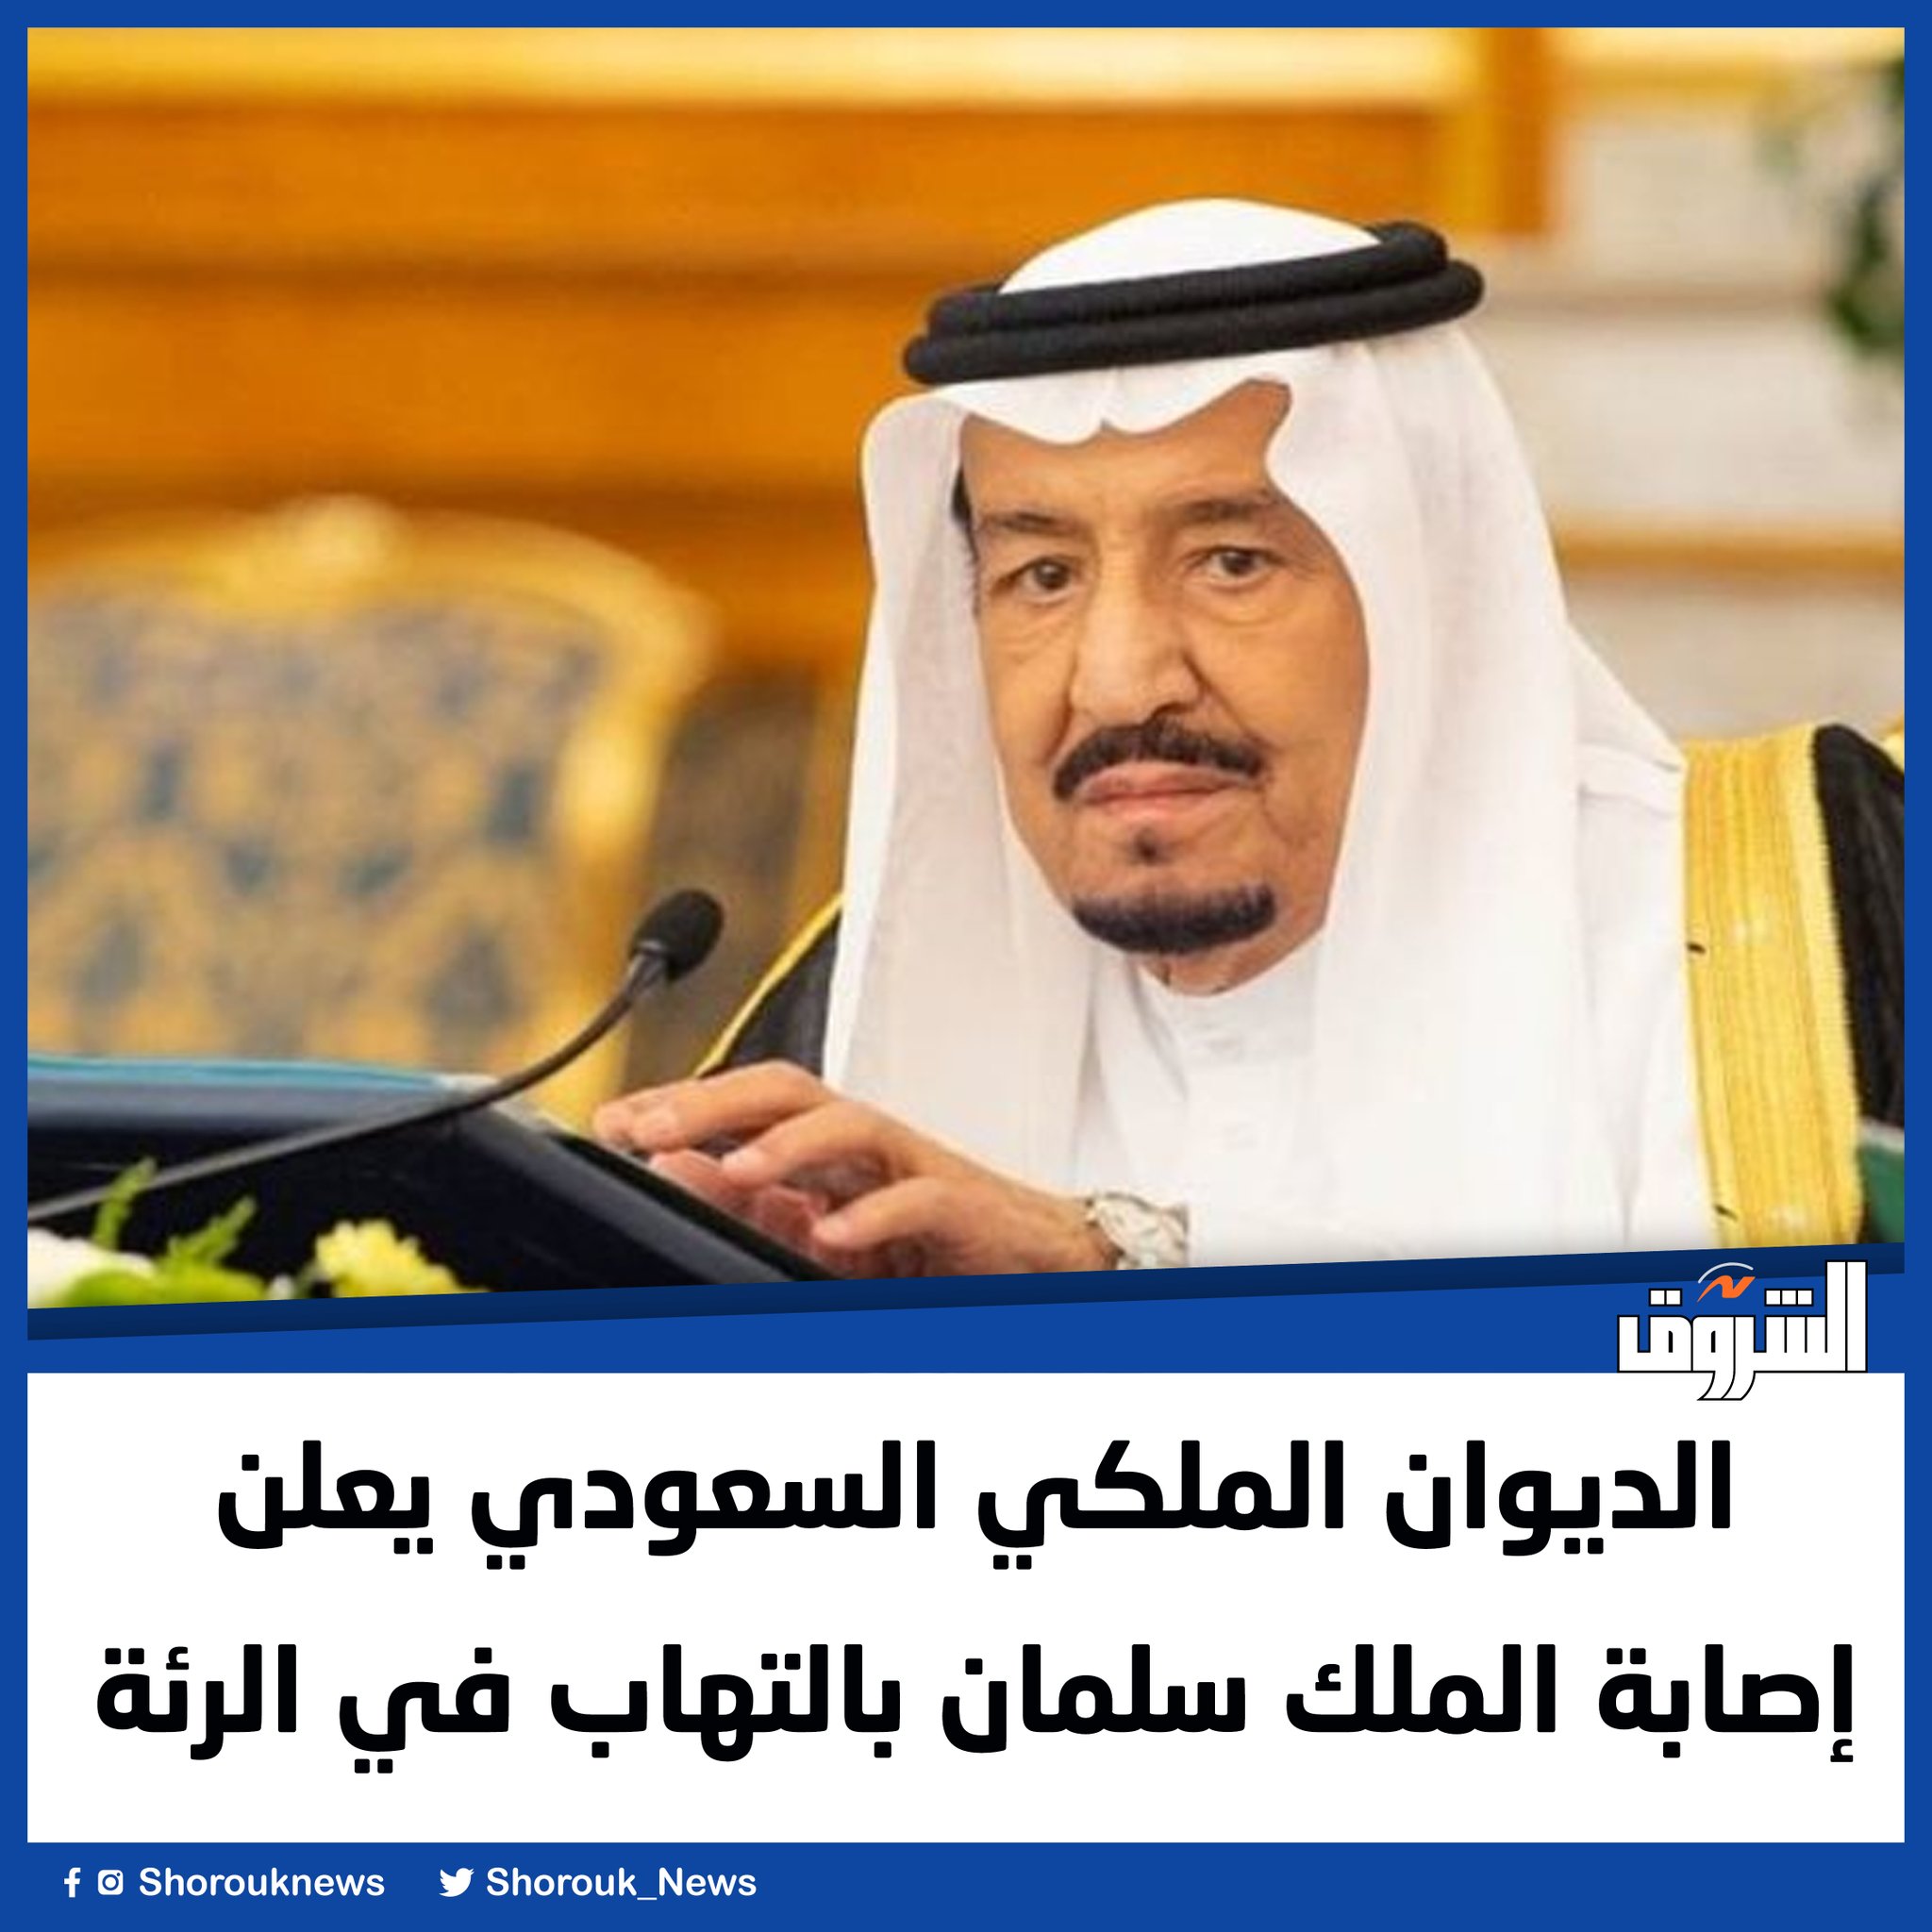 الشروق الديوان الملكي السعودي يعلن إصابة الملك سلمان بالتهاب في الرئة 